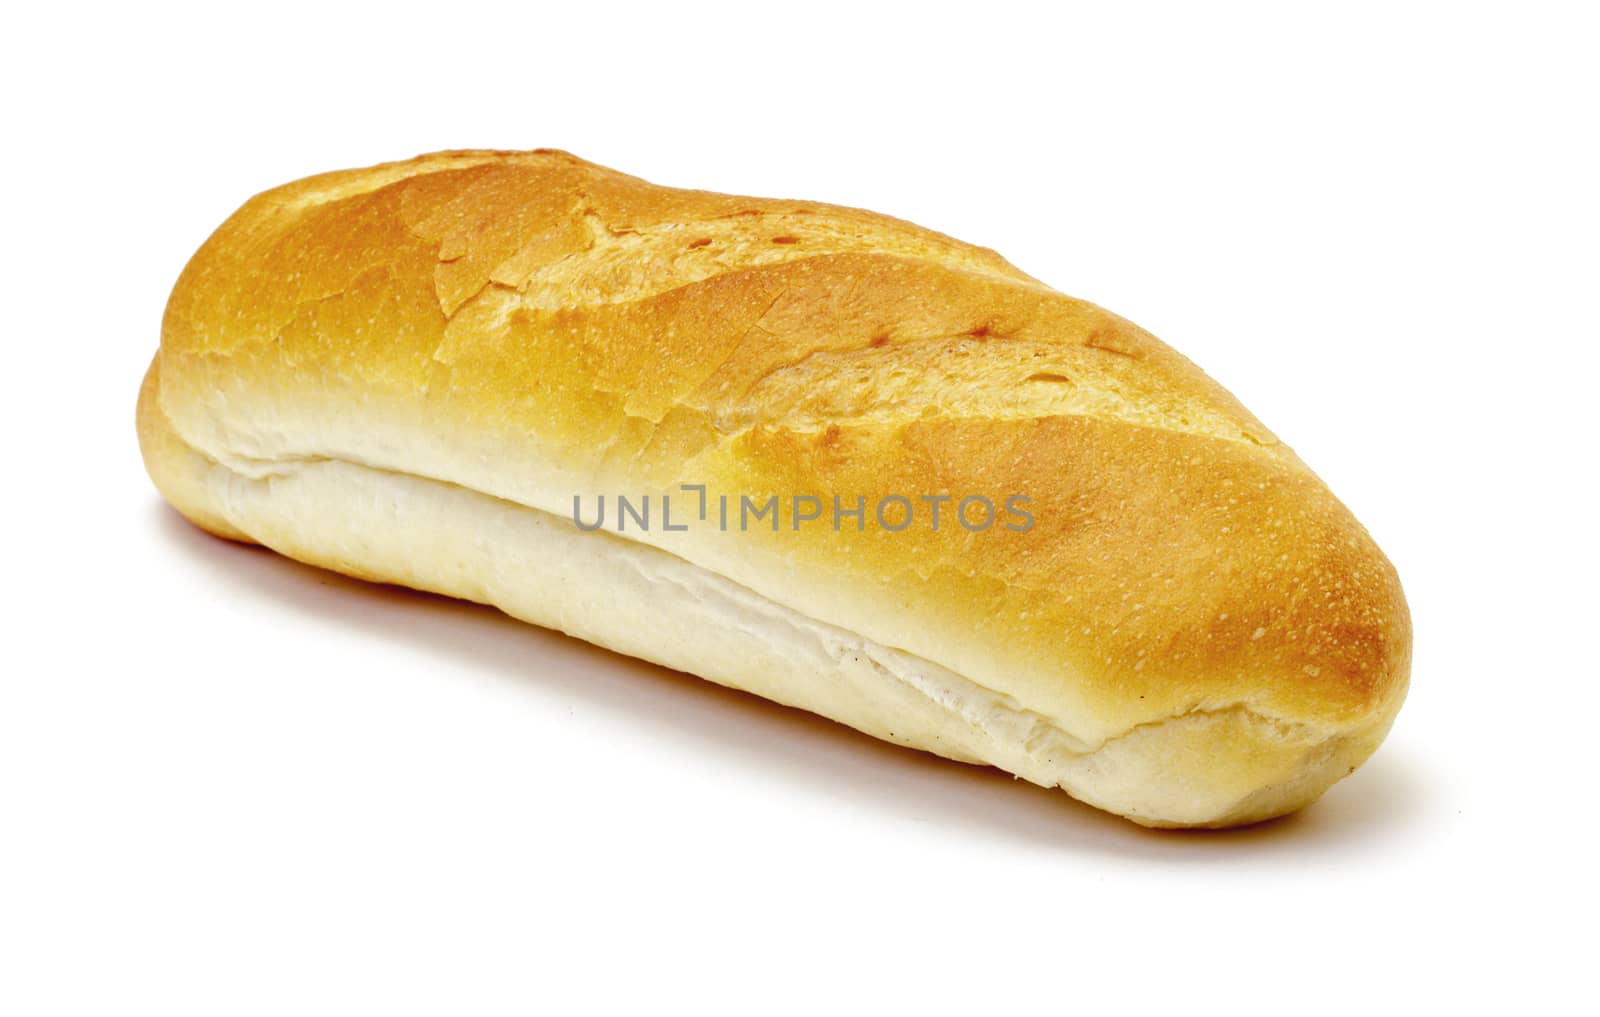 Wheat bread by marslander